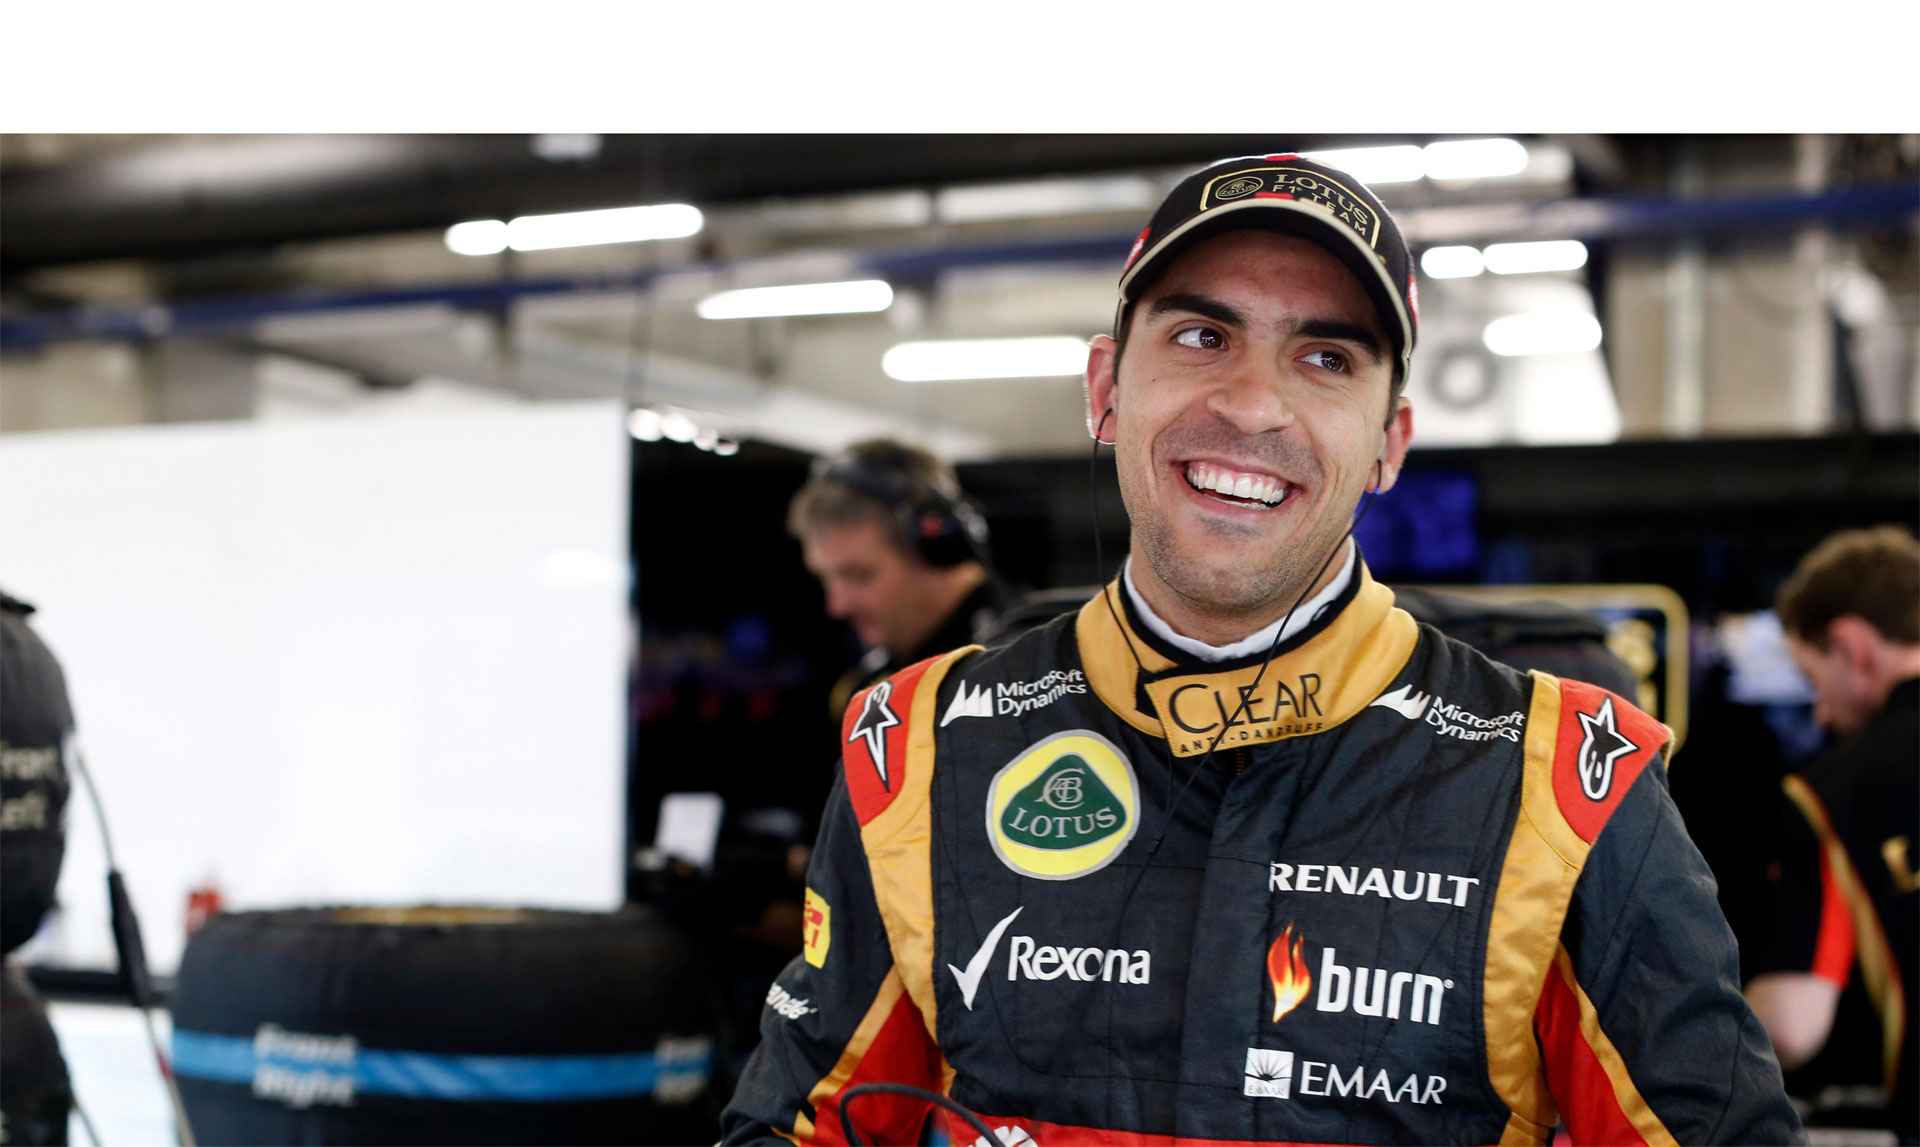 El piloto venezolano logró quedar entre los diez mejores puestos en las dos prácticas de este viernes, este sábado se jugará la clasificación